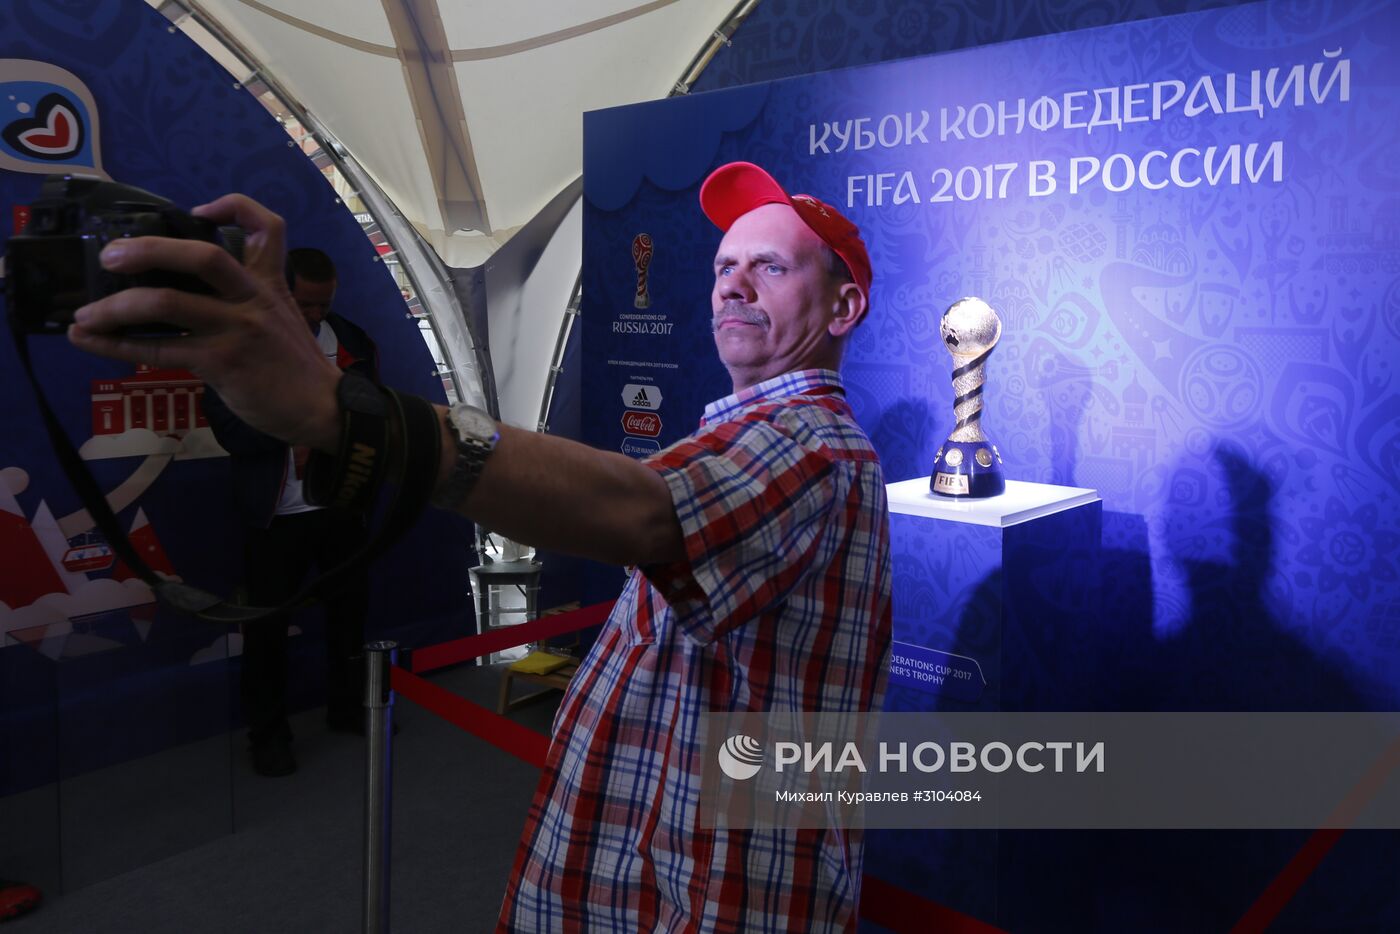 Открытие Парка Кубка конфедераций 2017 в Санкт-Петербурге